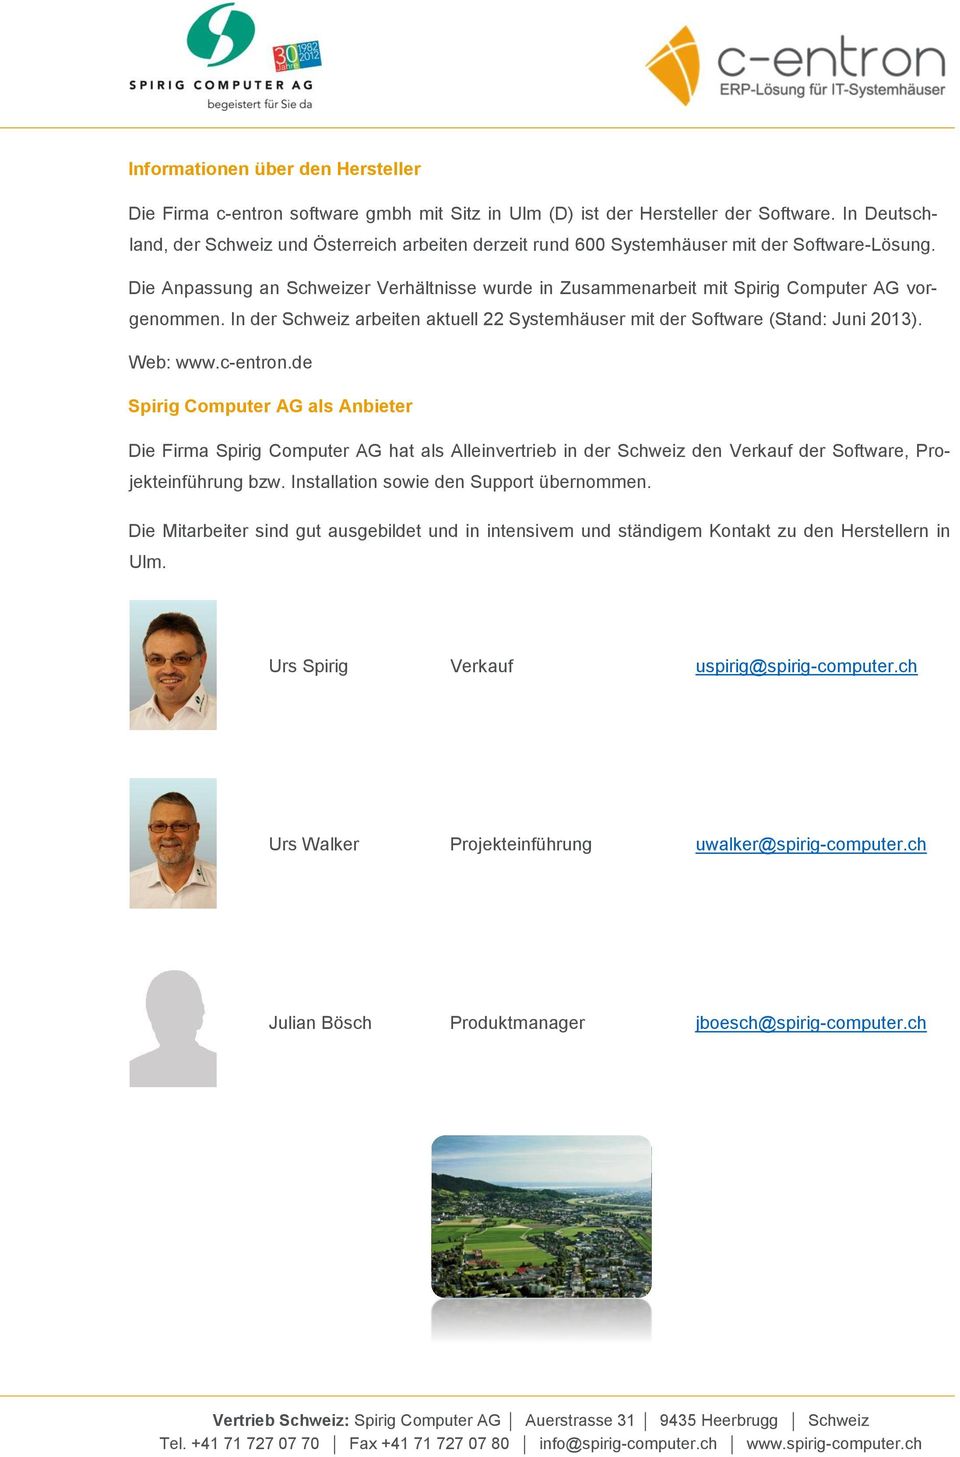 Die Anpassung an Schweizer Verhältnisse wurde in Zusammenarbeit mit Spirig Computer AG vorgenommen. In der Schweiz arbeiten aktuell 22 Systemhäuser mit der Software (Stand: Juni 2013). Web: www.